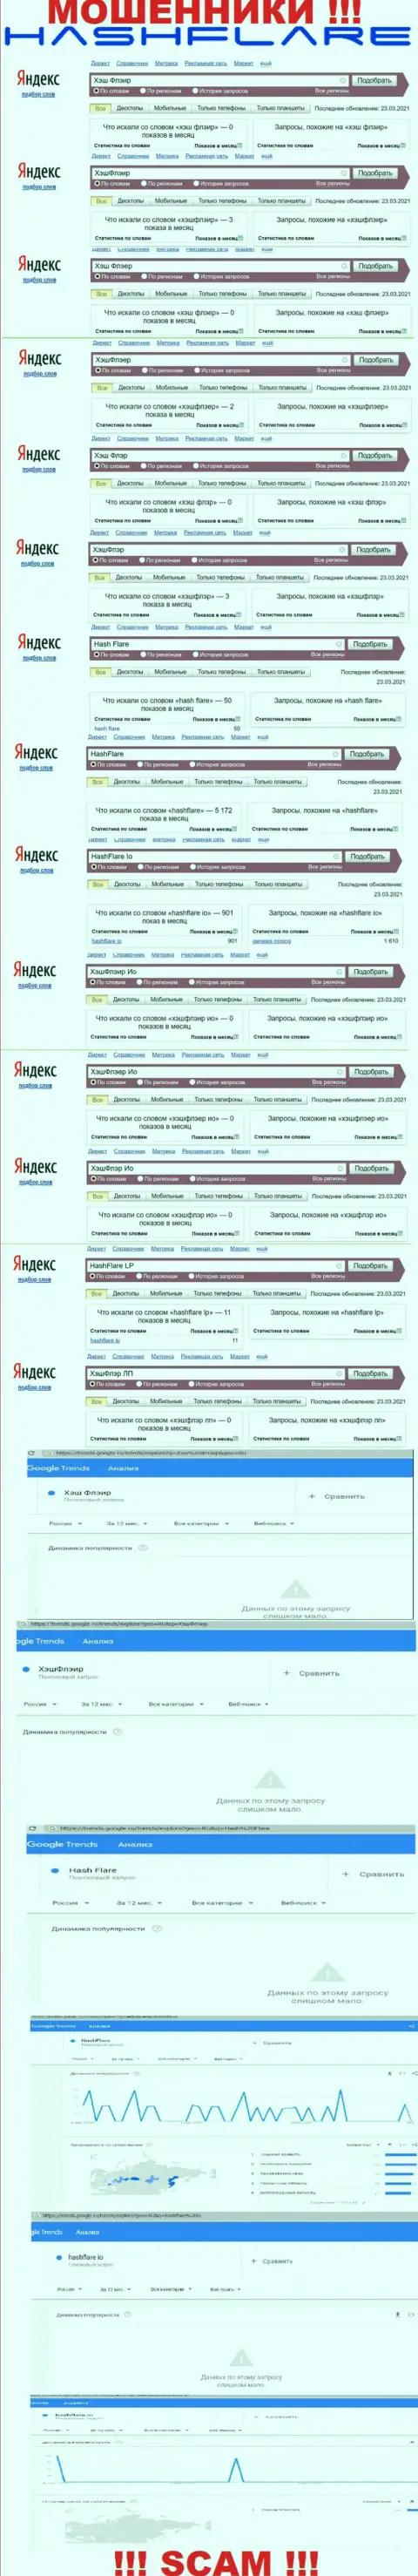 Число запросов в поисковиках интернет сети по бренду мошенников HashFlare